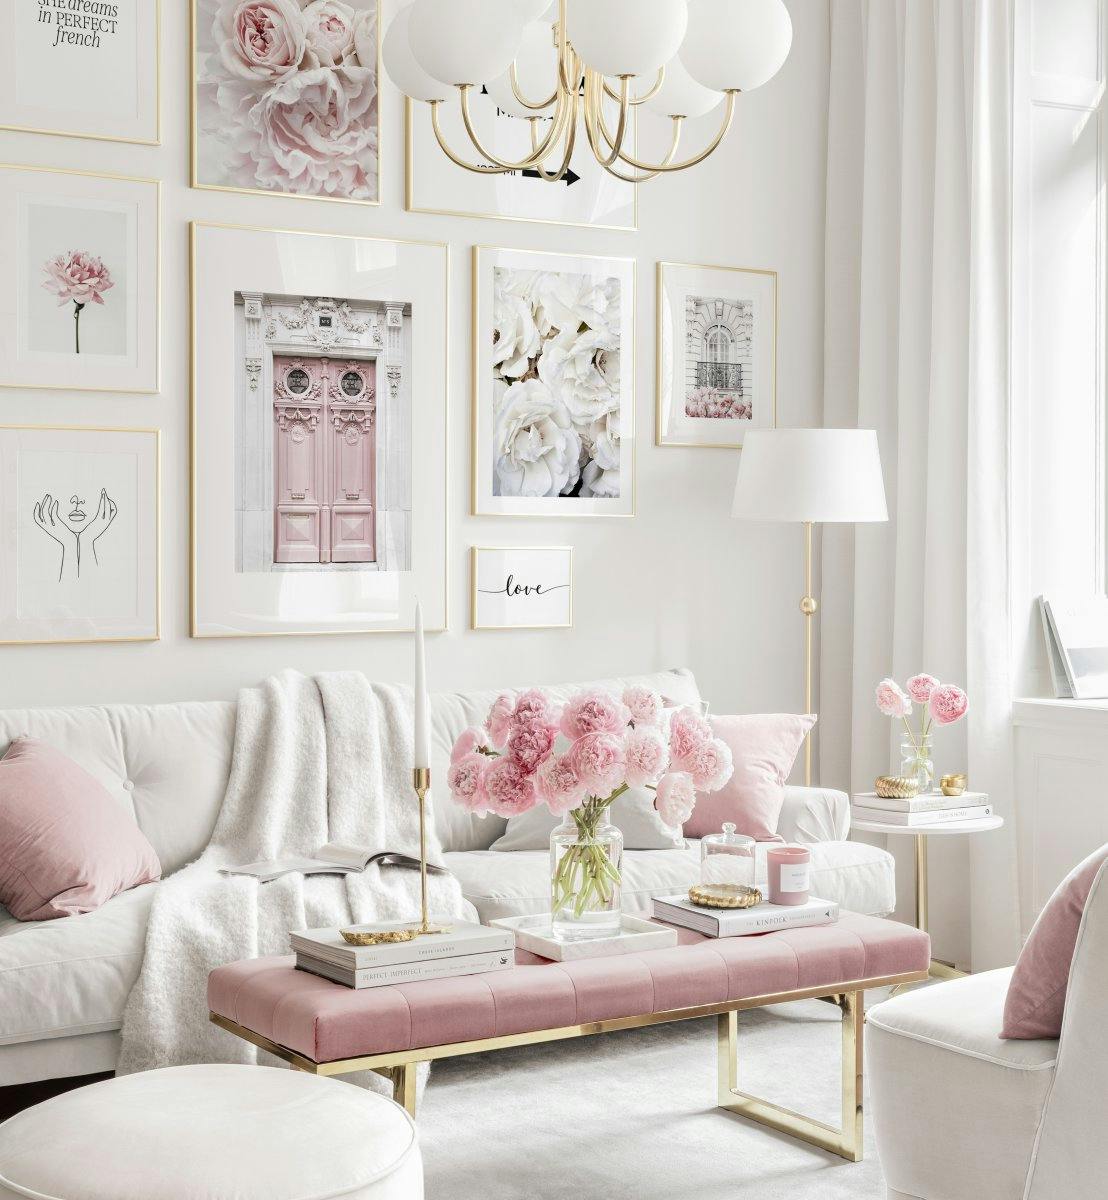 Galeria obrazow rozowa harmonia plakaty kwiatowe rozowe dekoracje zlote ramy